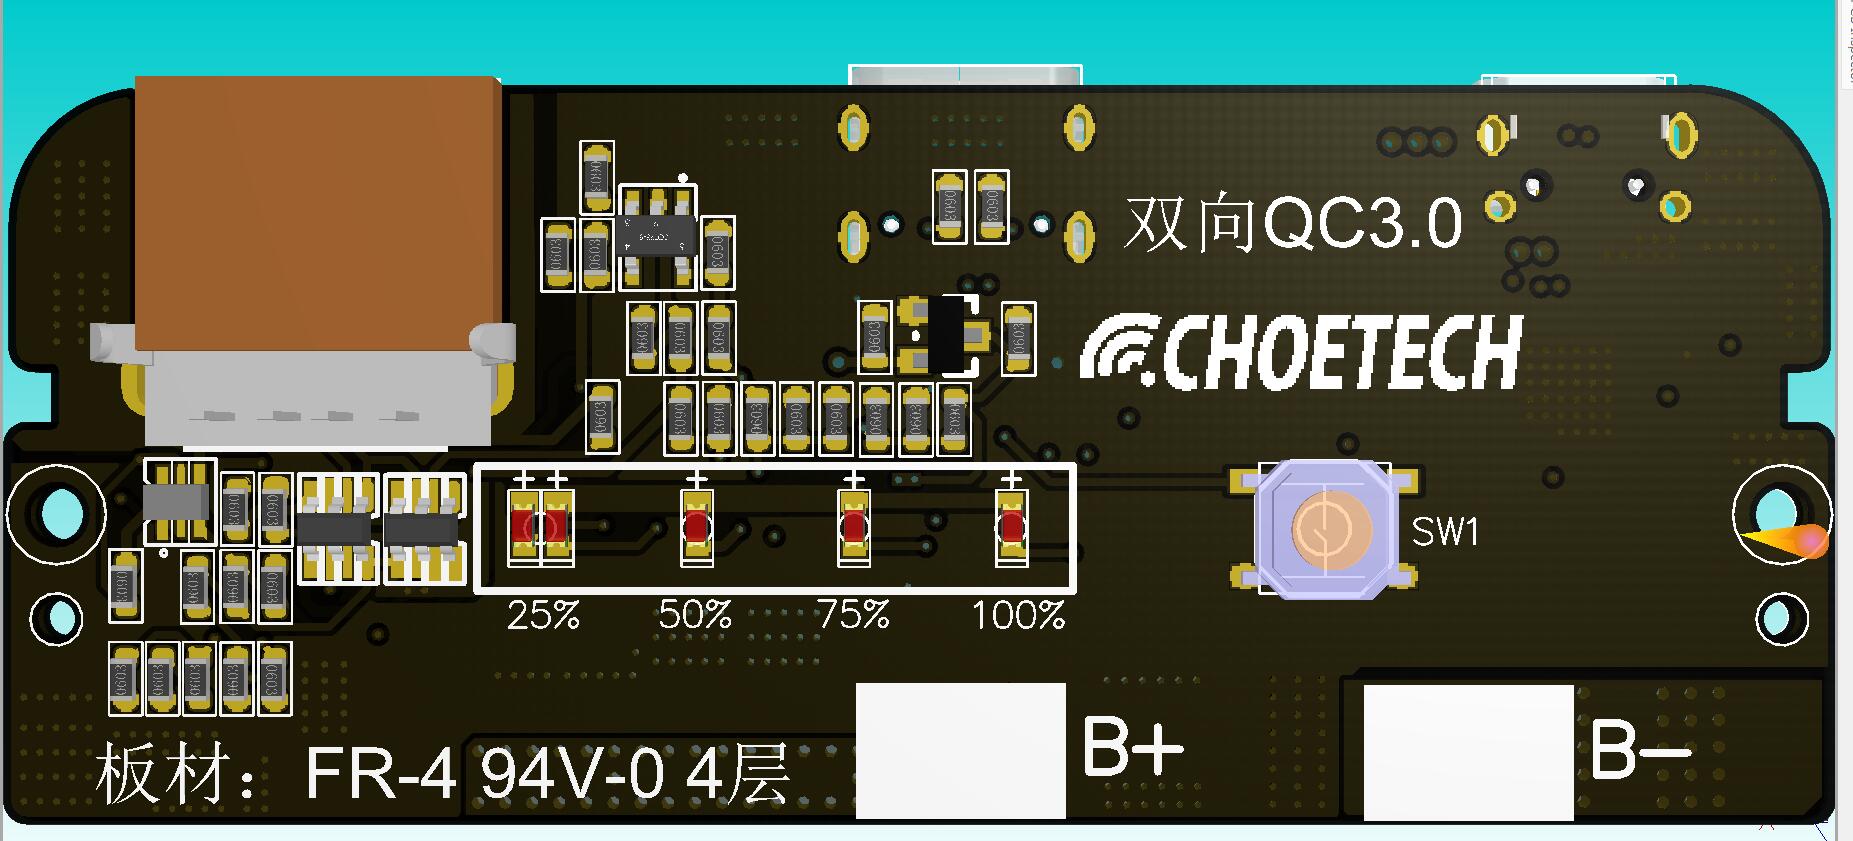 CHOETECH新品将首发创惟GL883A 快充进入“全网通”时代-充电头网